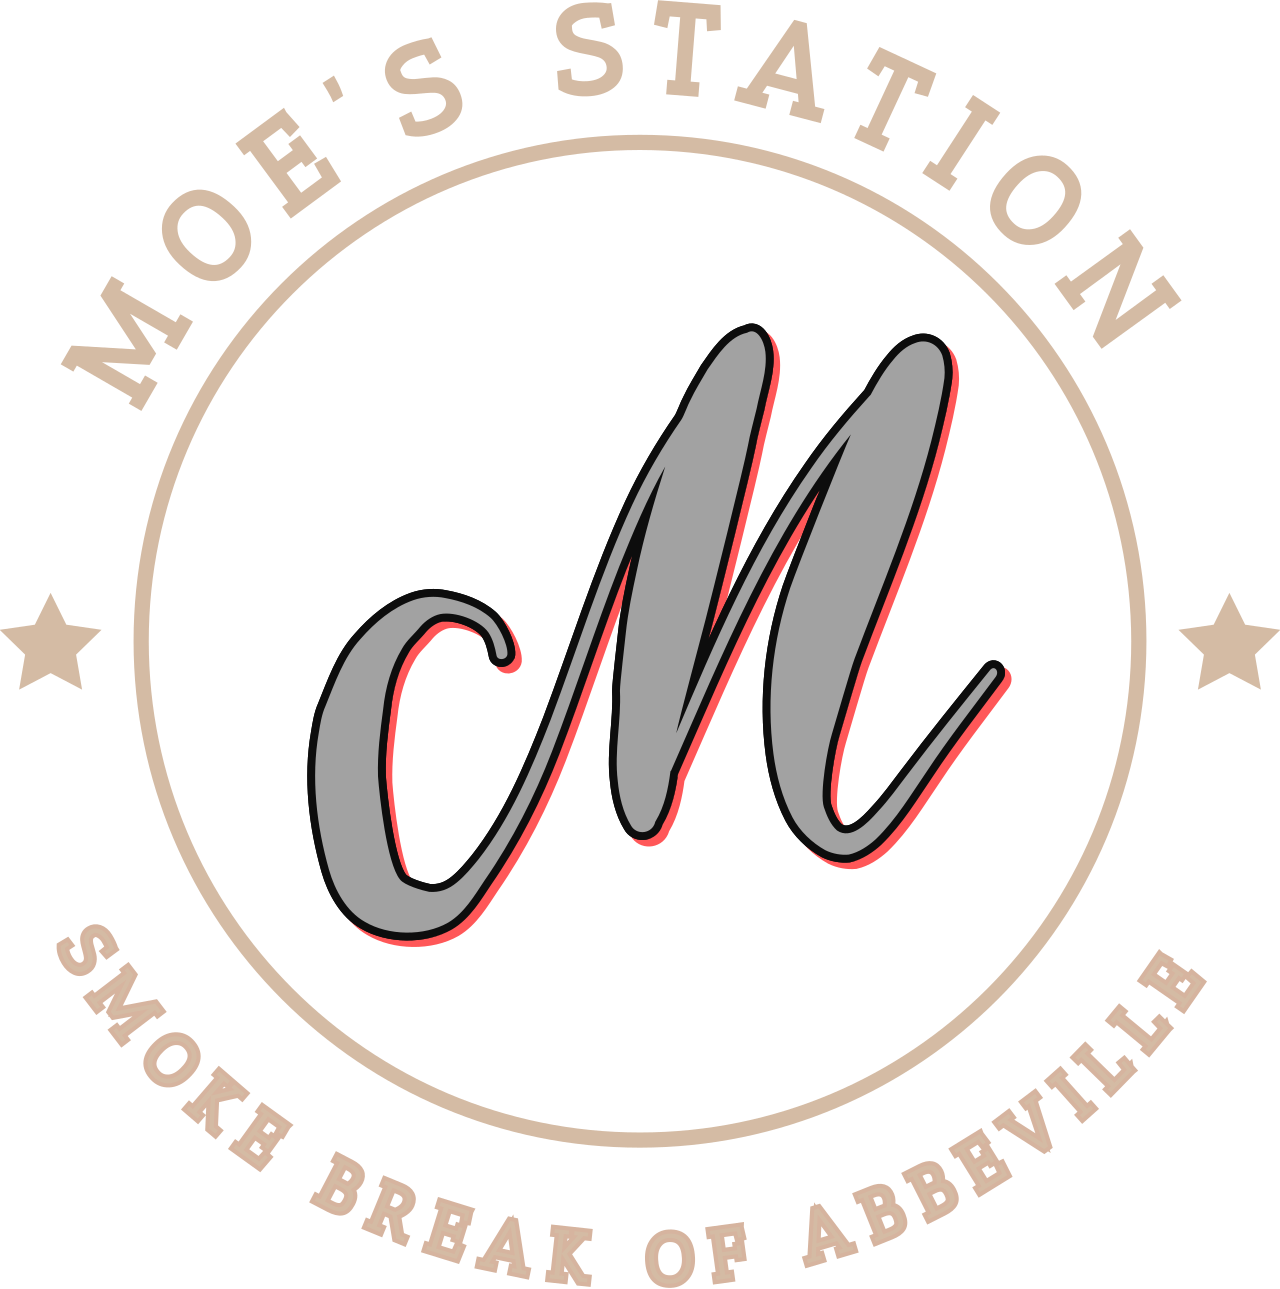 Moe’s Station 's logo